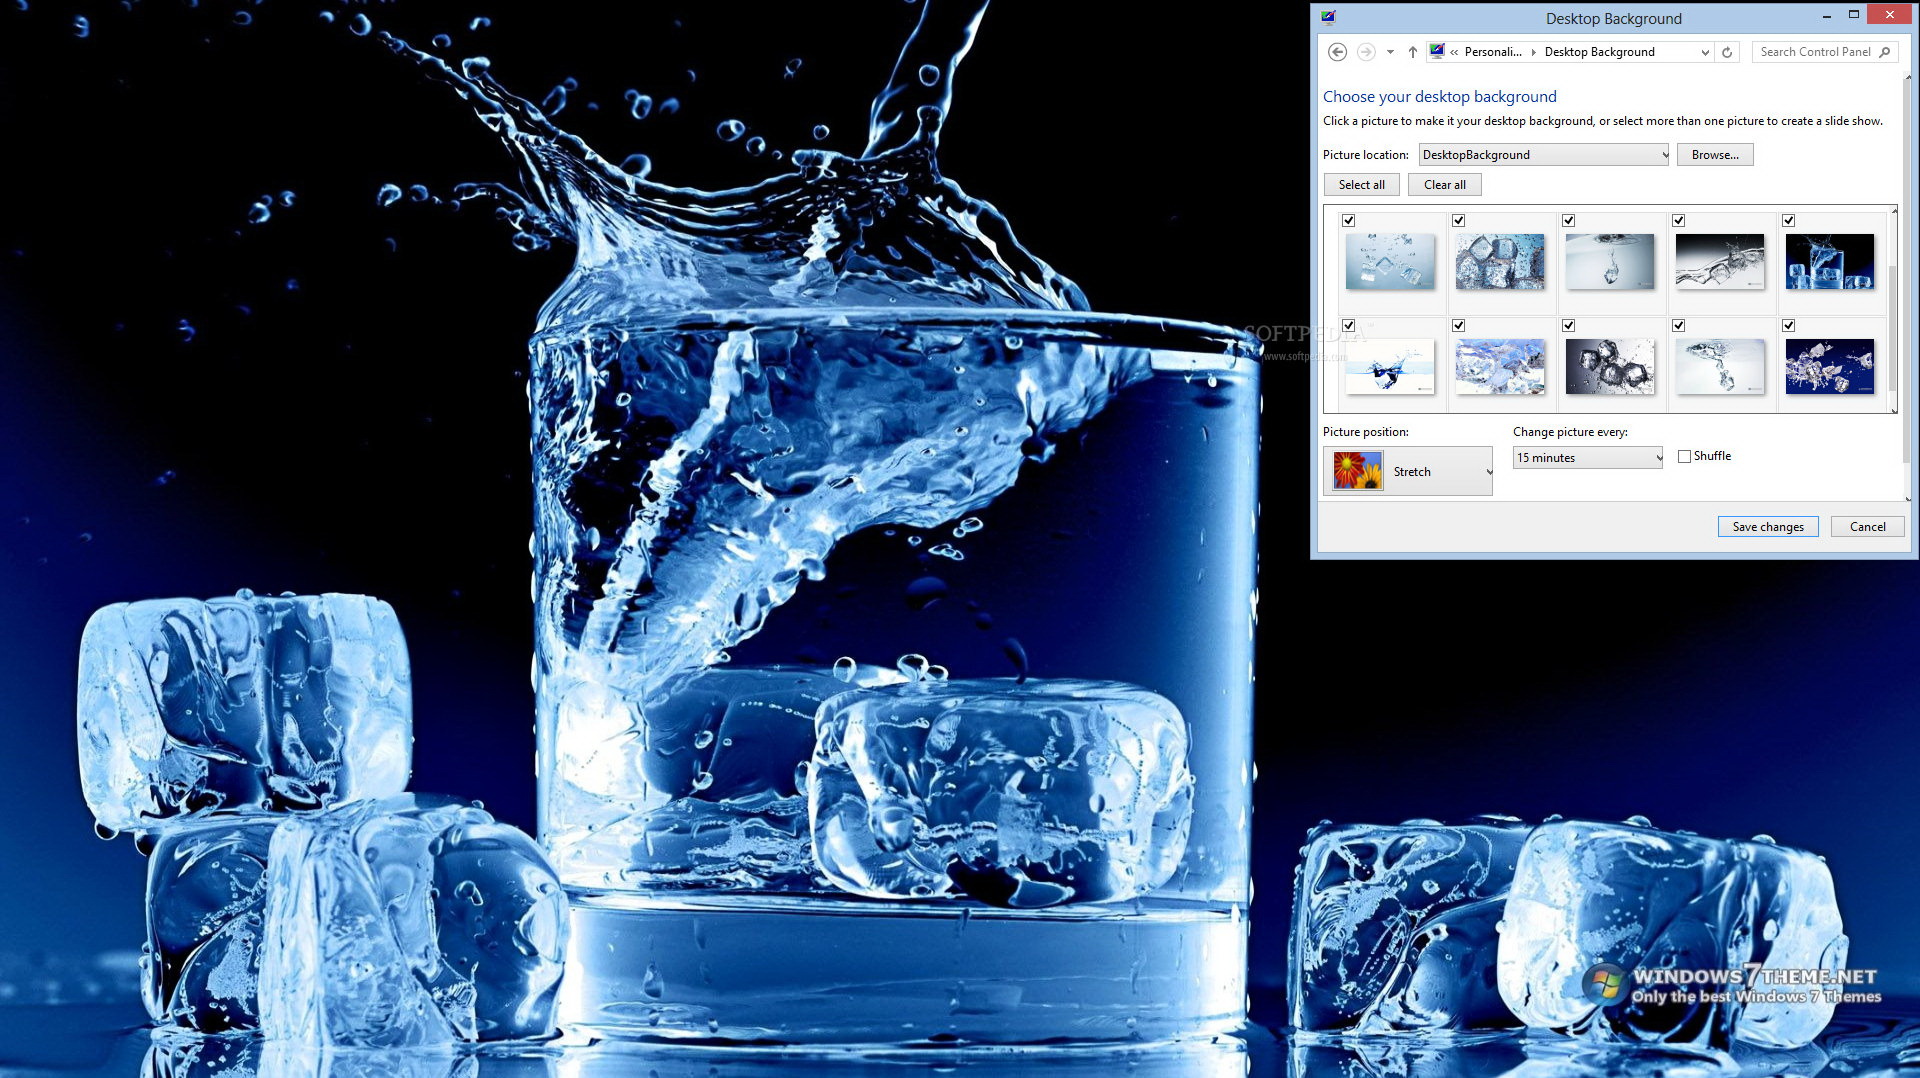 Ice in Water Windows 7 Theme